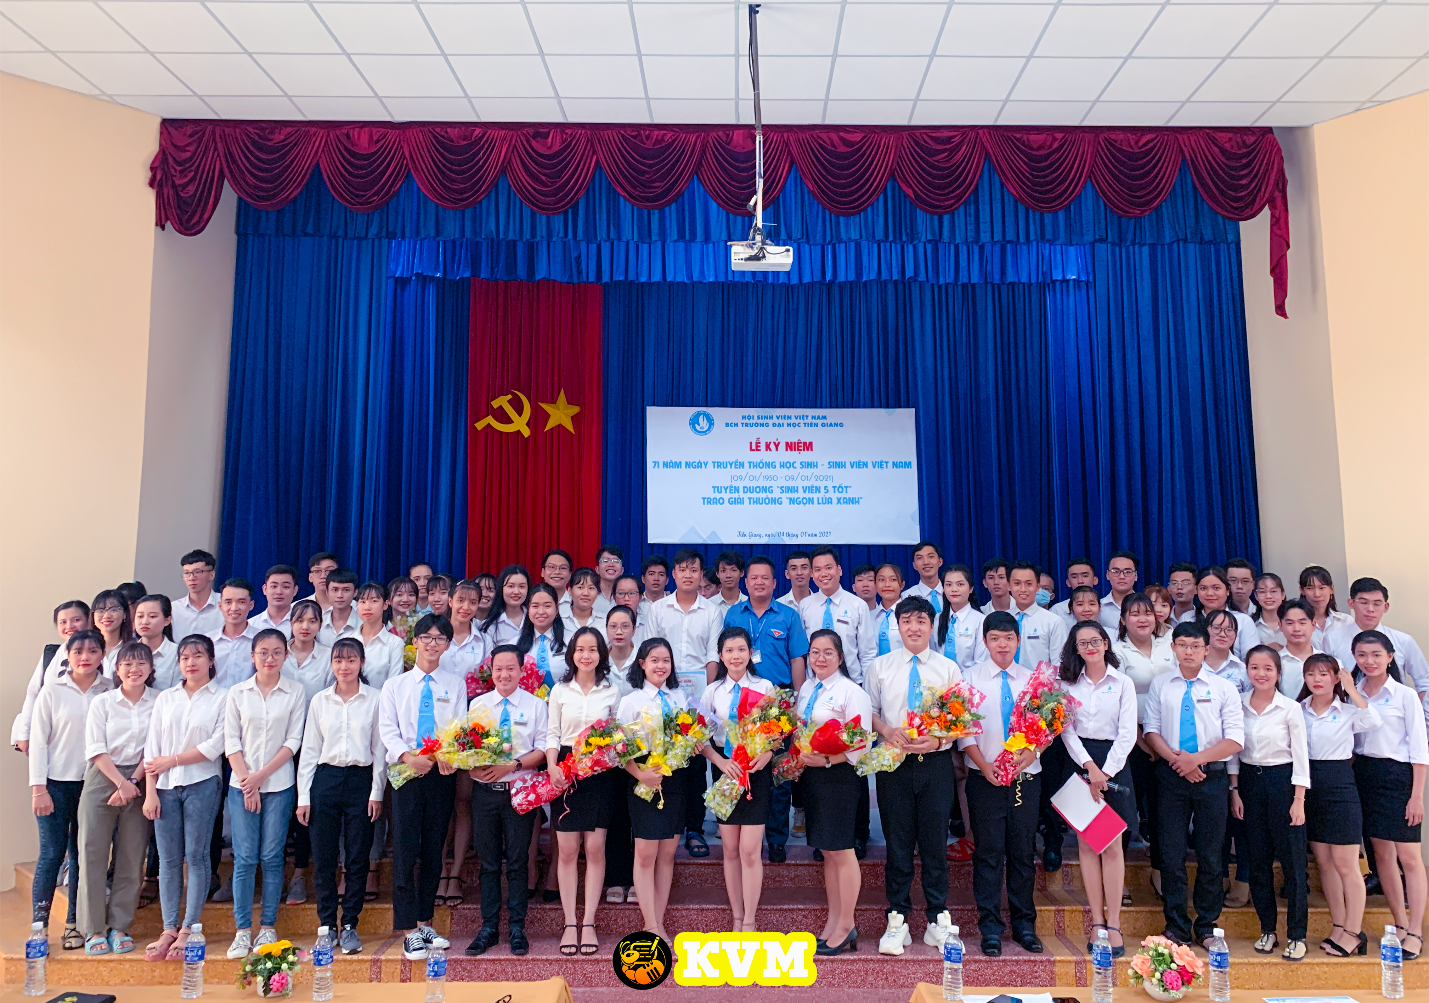 Lễ kỉ niệm 71 năm Ngày truyền thống học sinh – sinh viên Việt Nam (09/01/1950 – 09/01/2021), tuyên dương “Sinh viên 5 tốt” năm học 2019 - 2020 và trao Giải thưởng “Ngọn lửa xanh” năm 2020